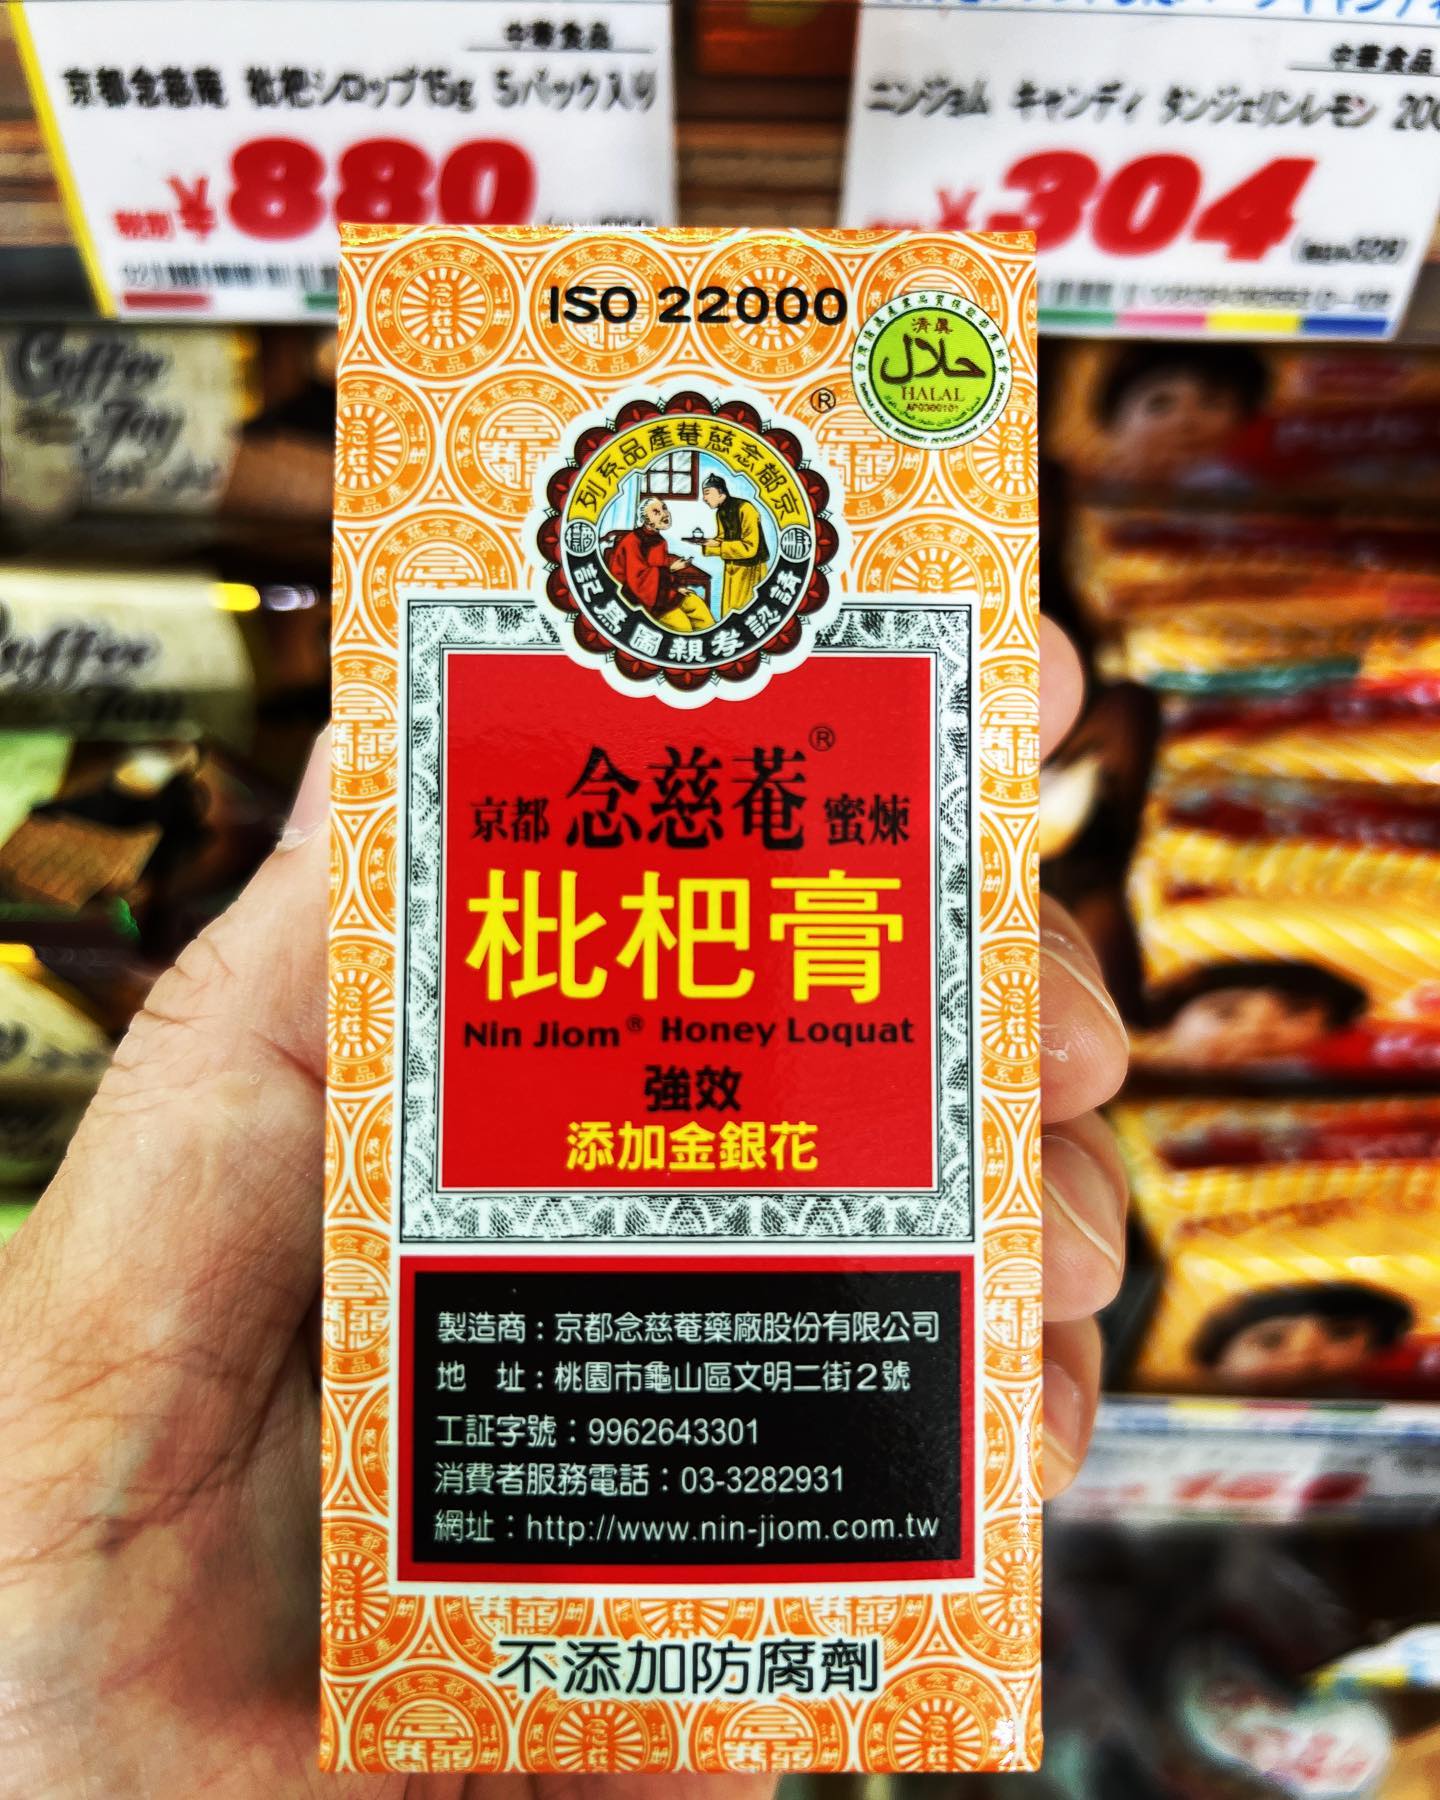 人気の台湾土産、喉に嬉しいびわシロップ「京都念慈庵の枇杷膏」おすすめの飲み方